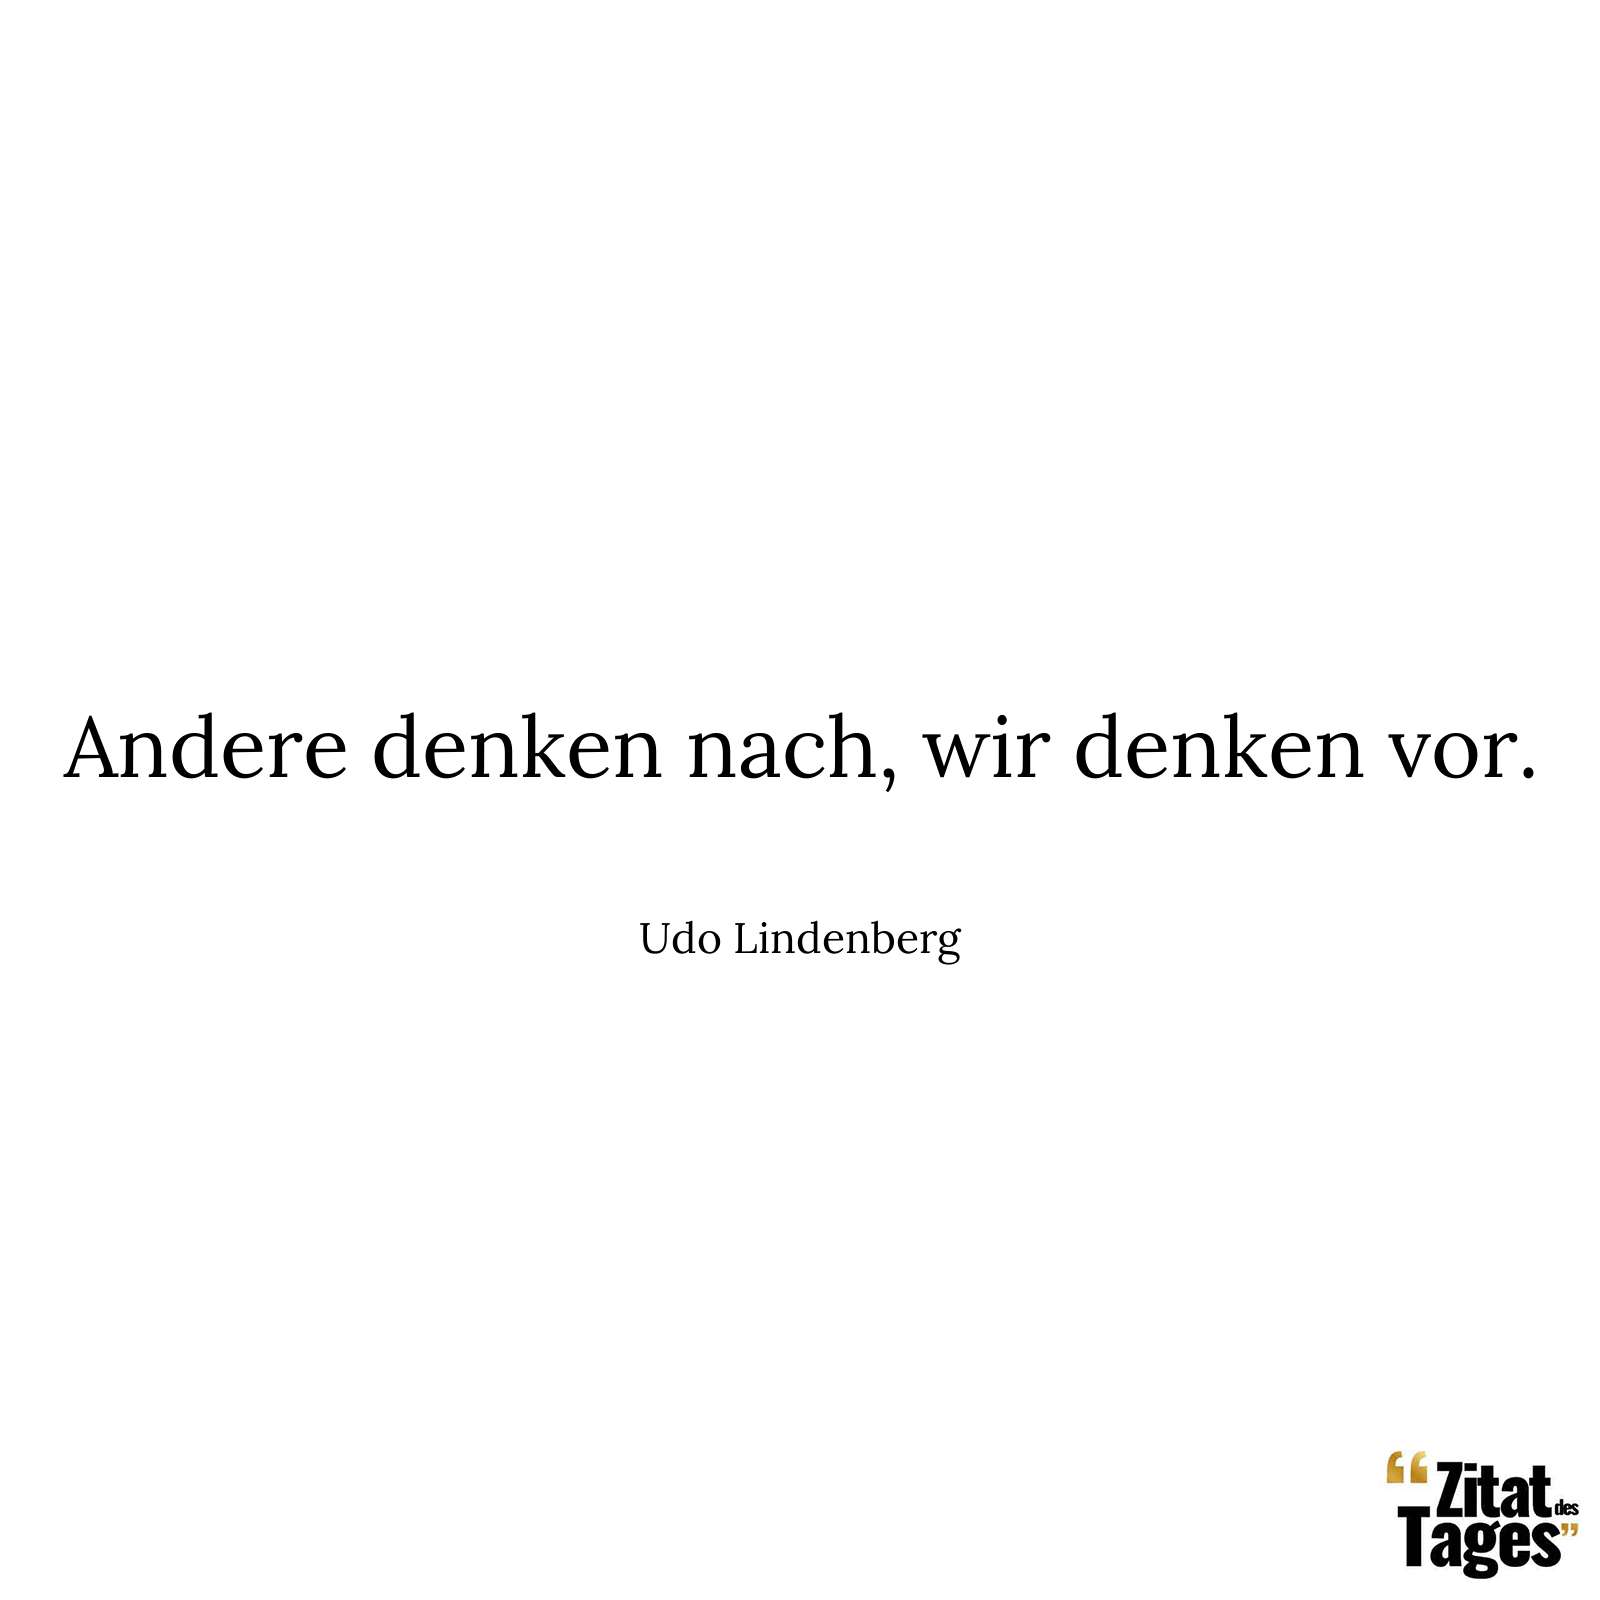 Andere denken nach, wir denken vor. - Udo Lindenberg